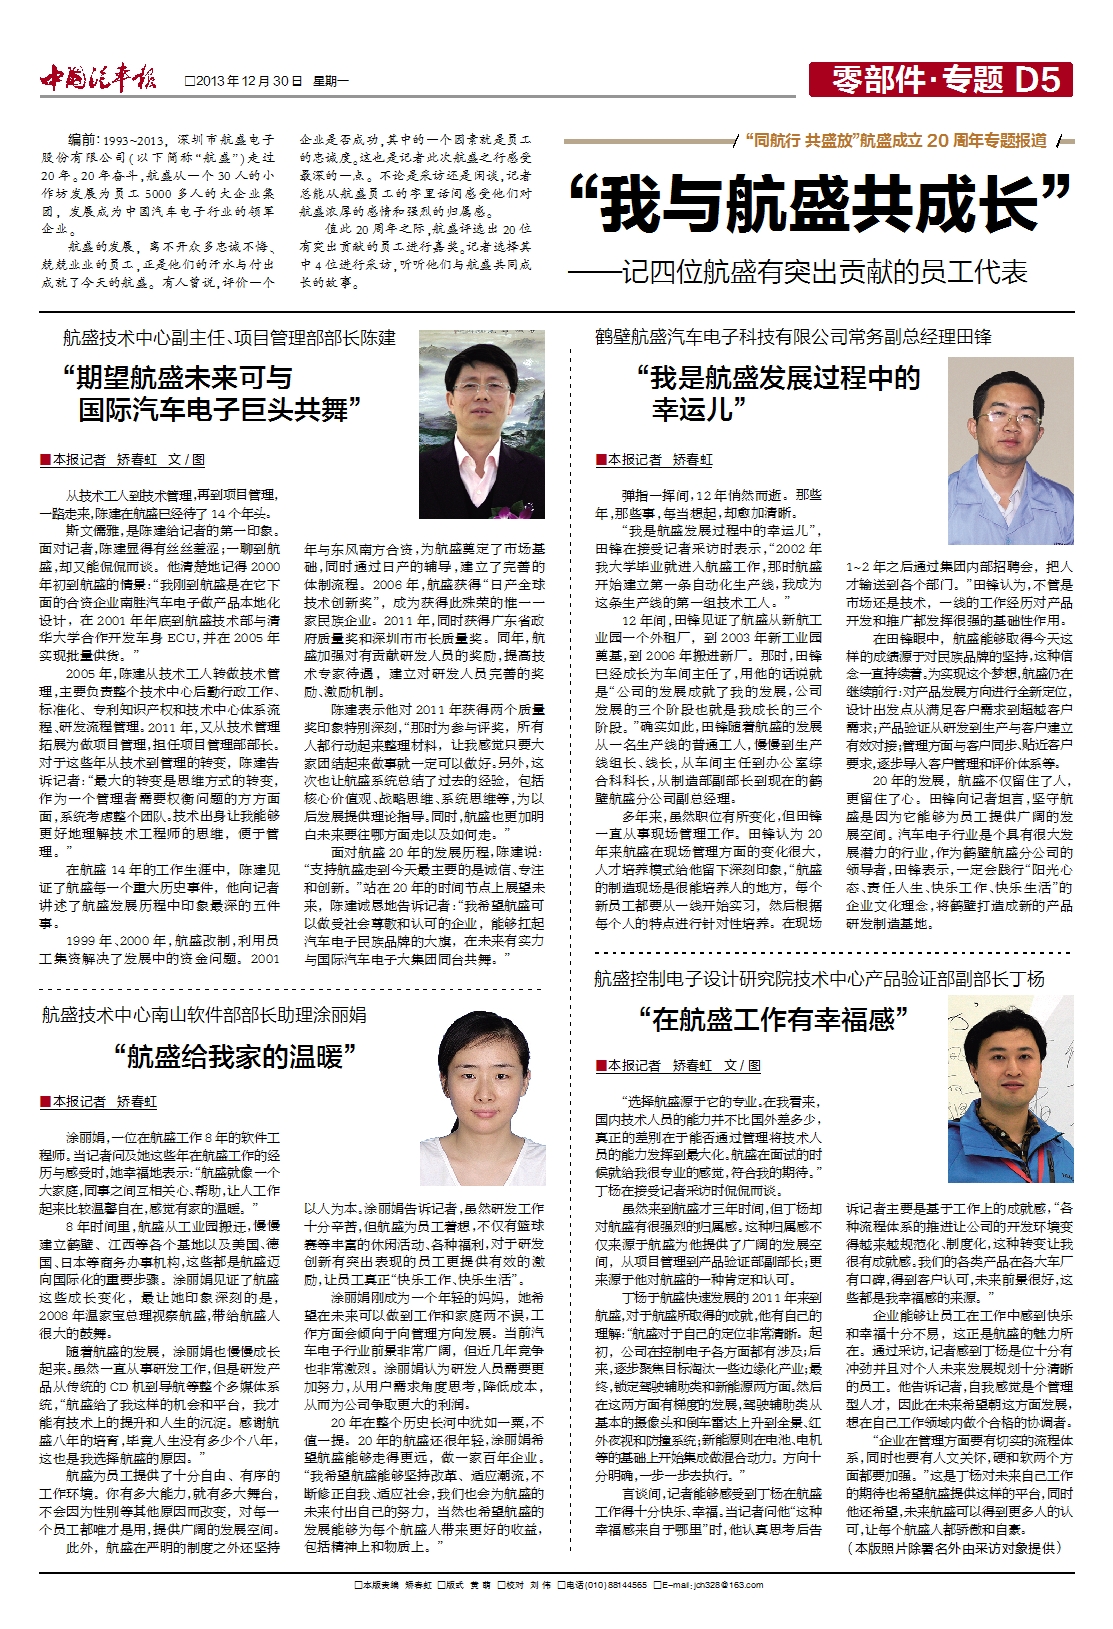 “我與航盛共生長”——轉自《中國汽車報》 記四位航盛有凸起進獻的員工代表